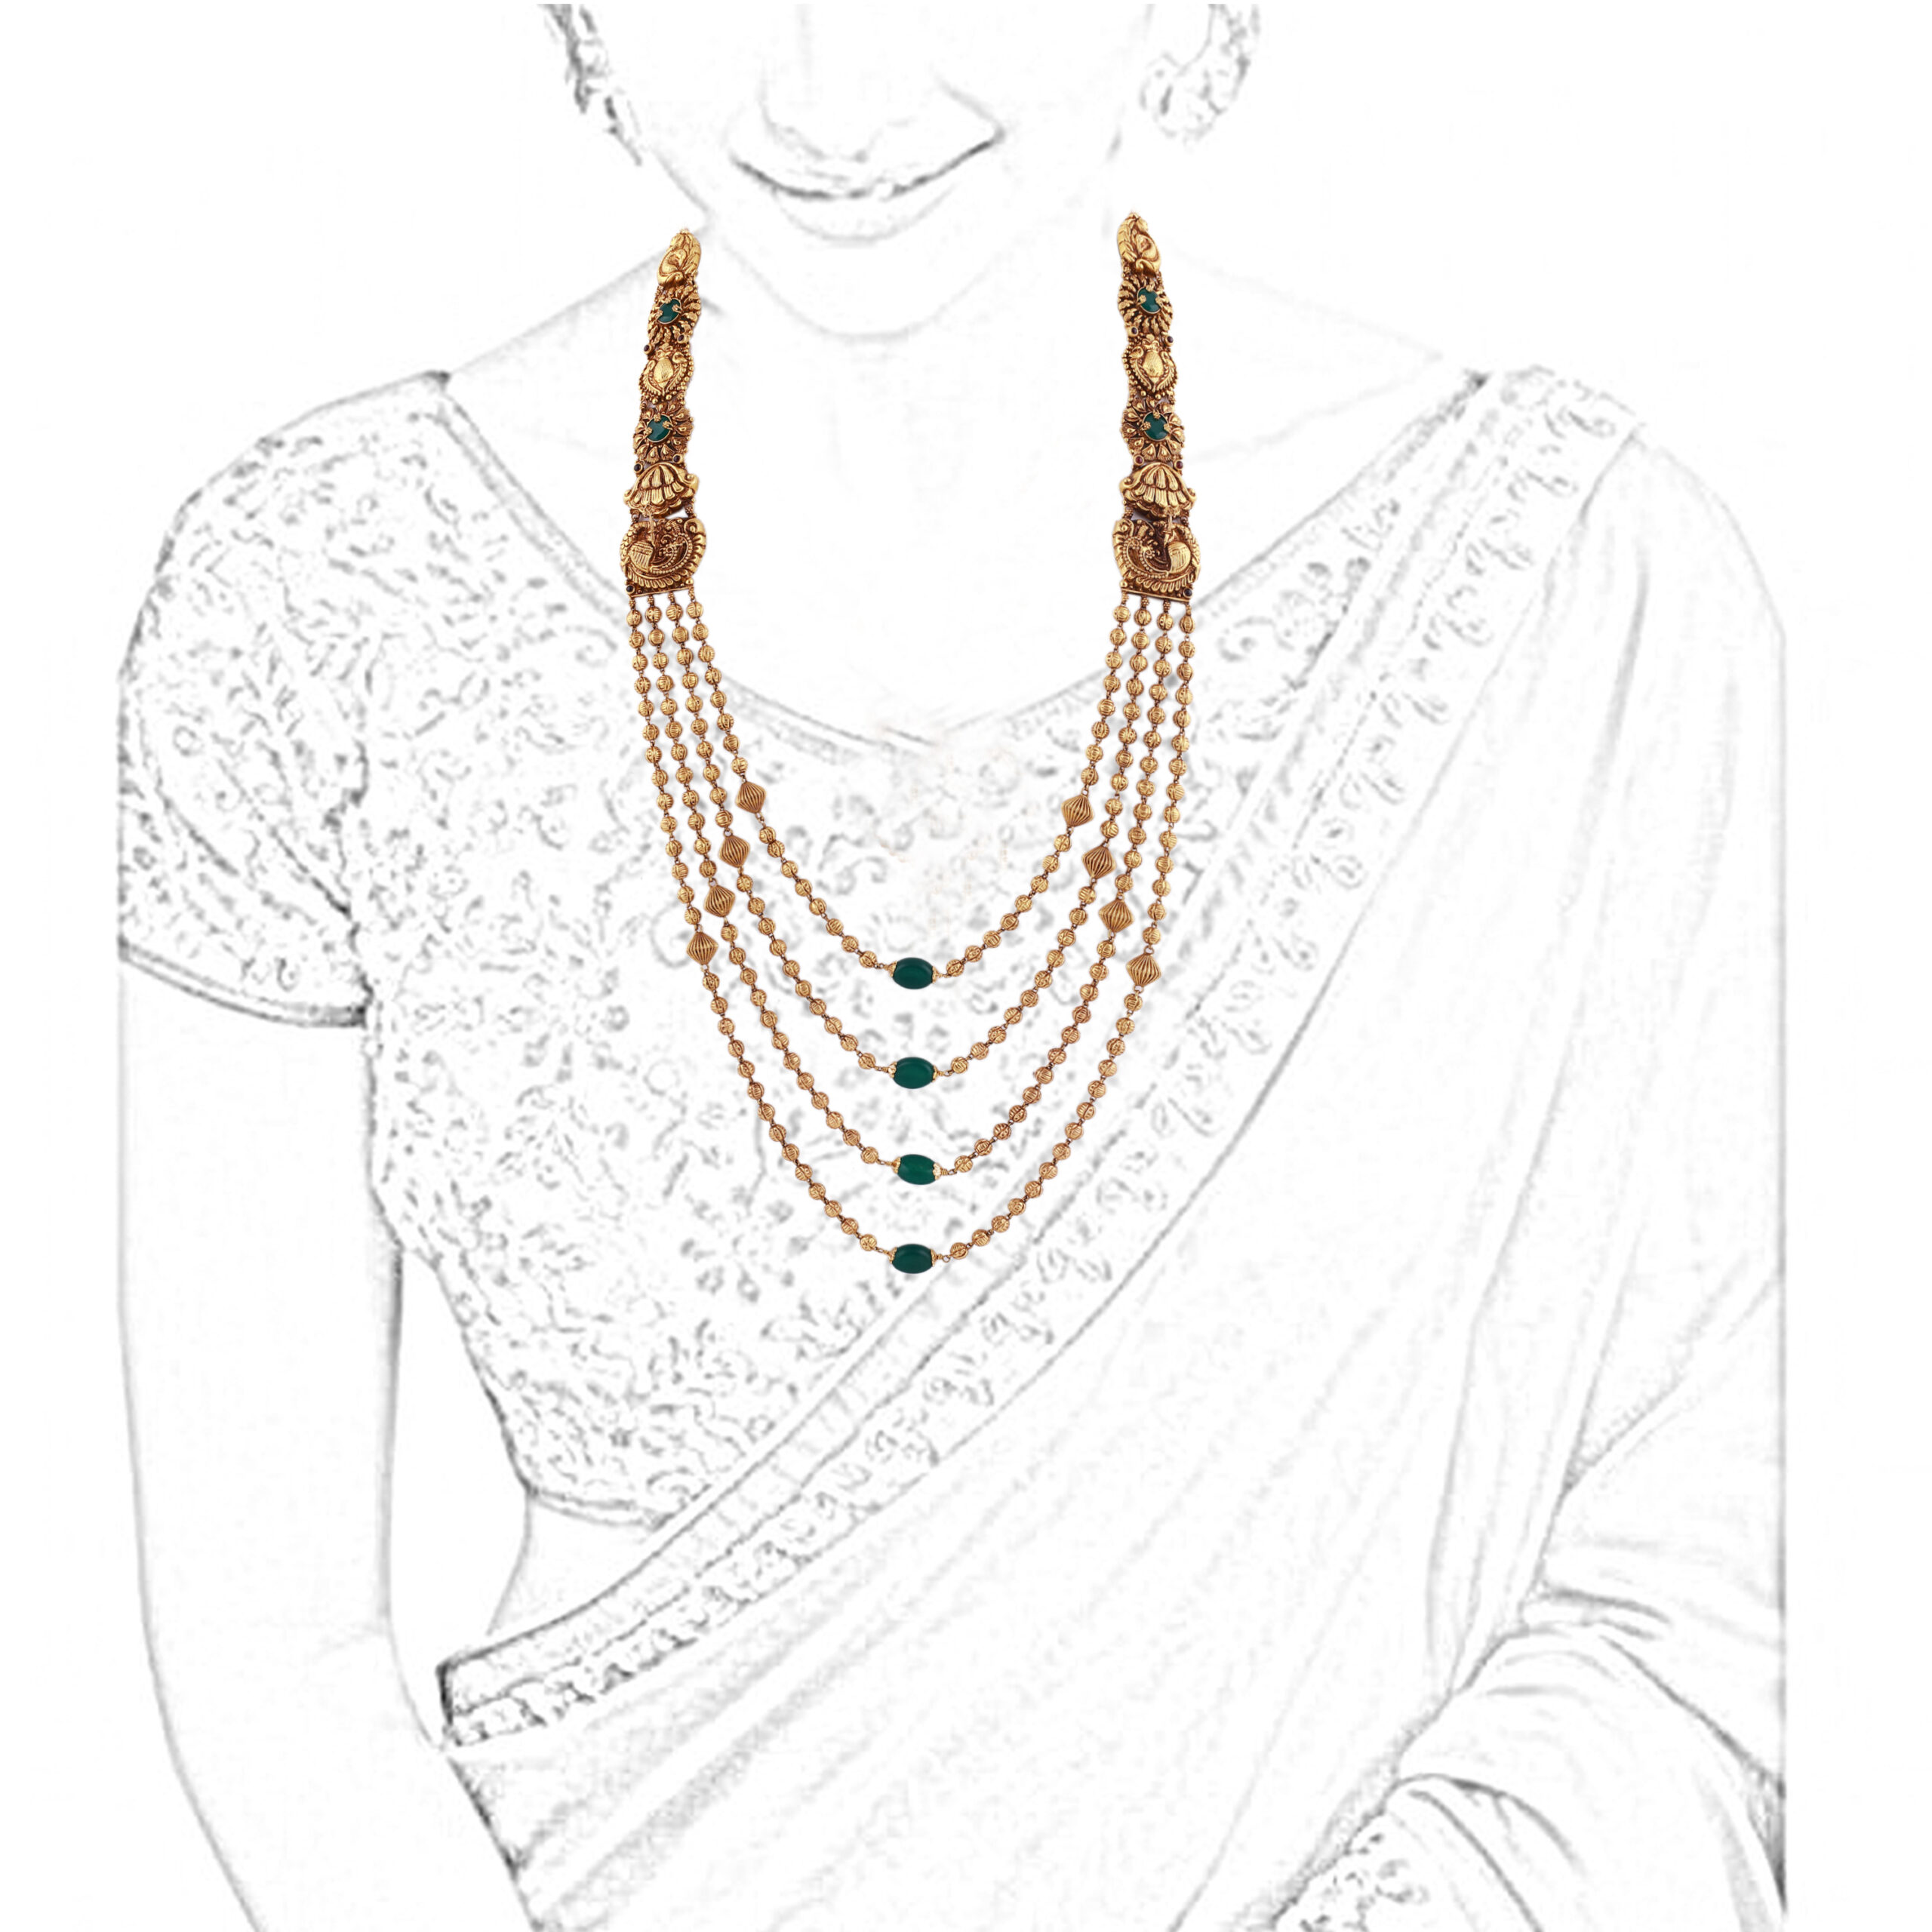 Ornate Necklace Design Sketch